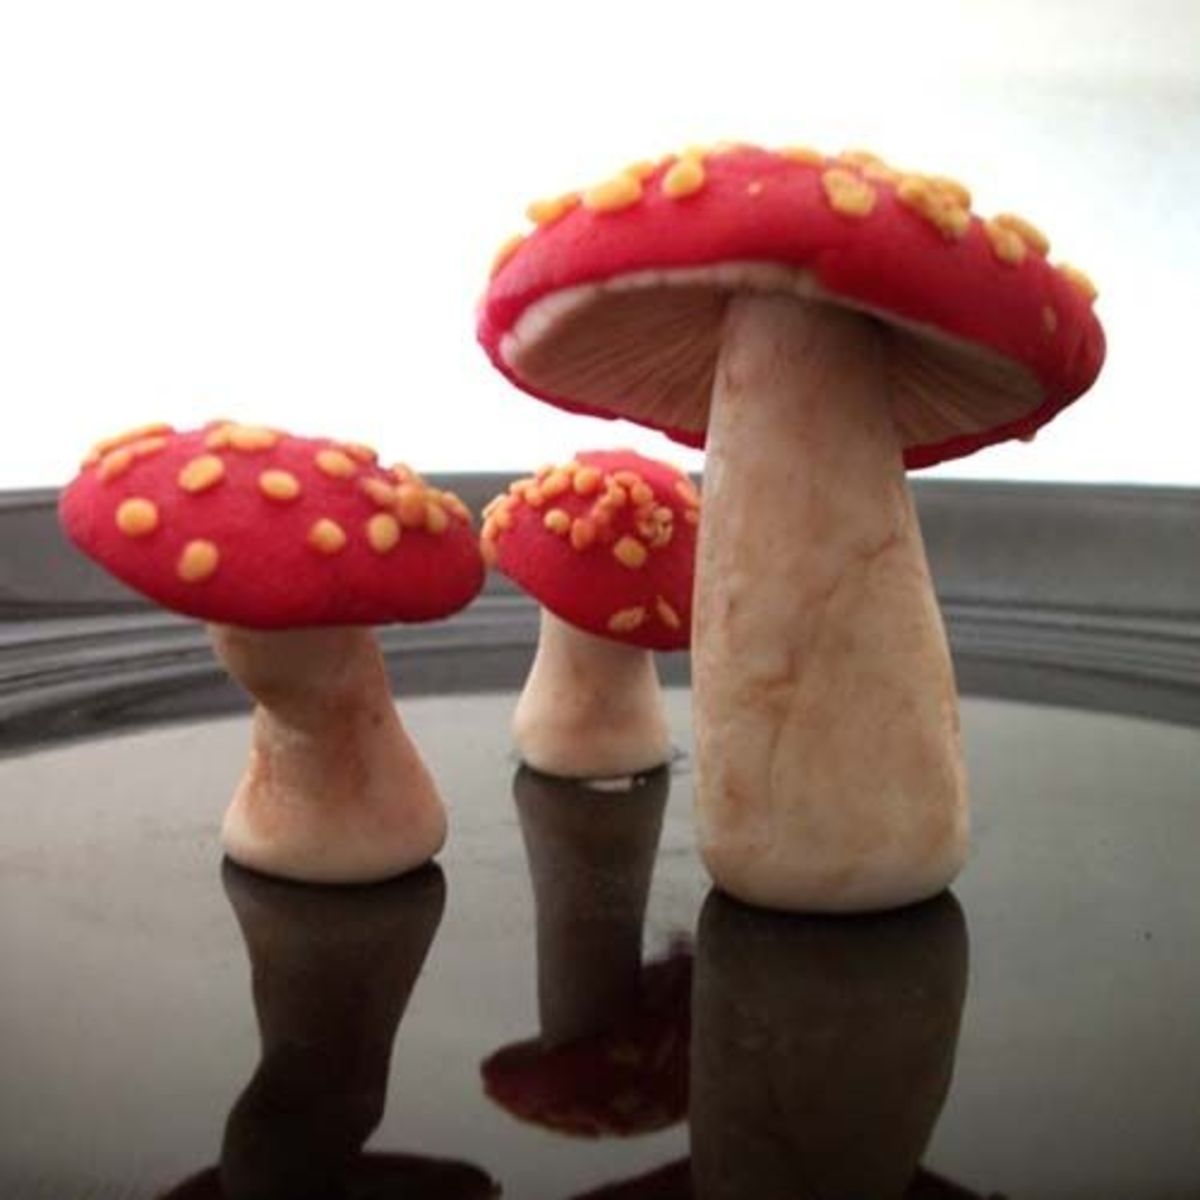 Completed mushroom sweets